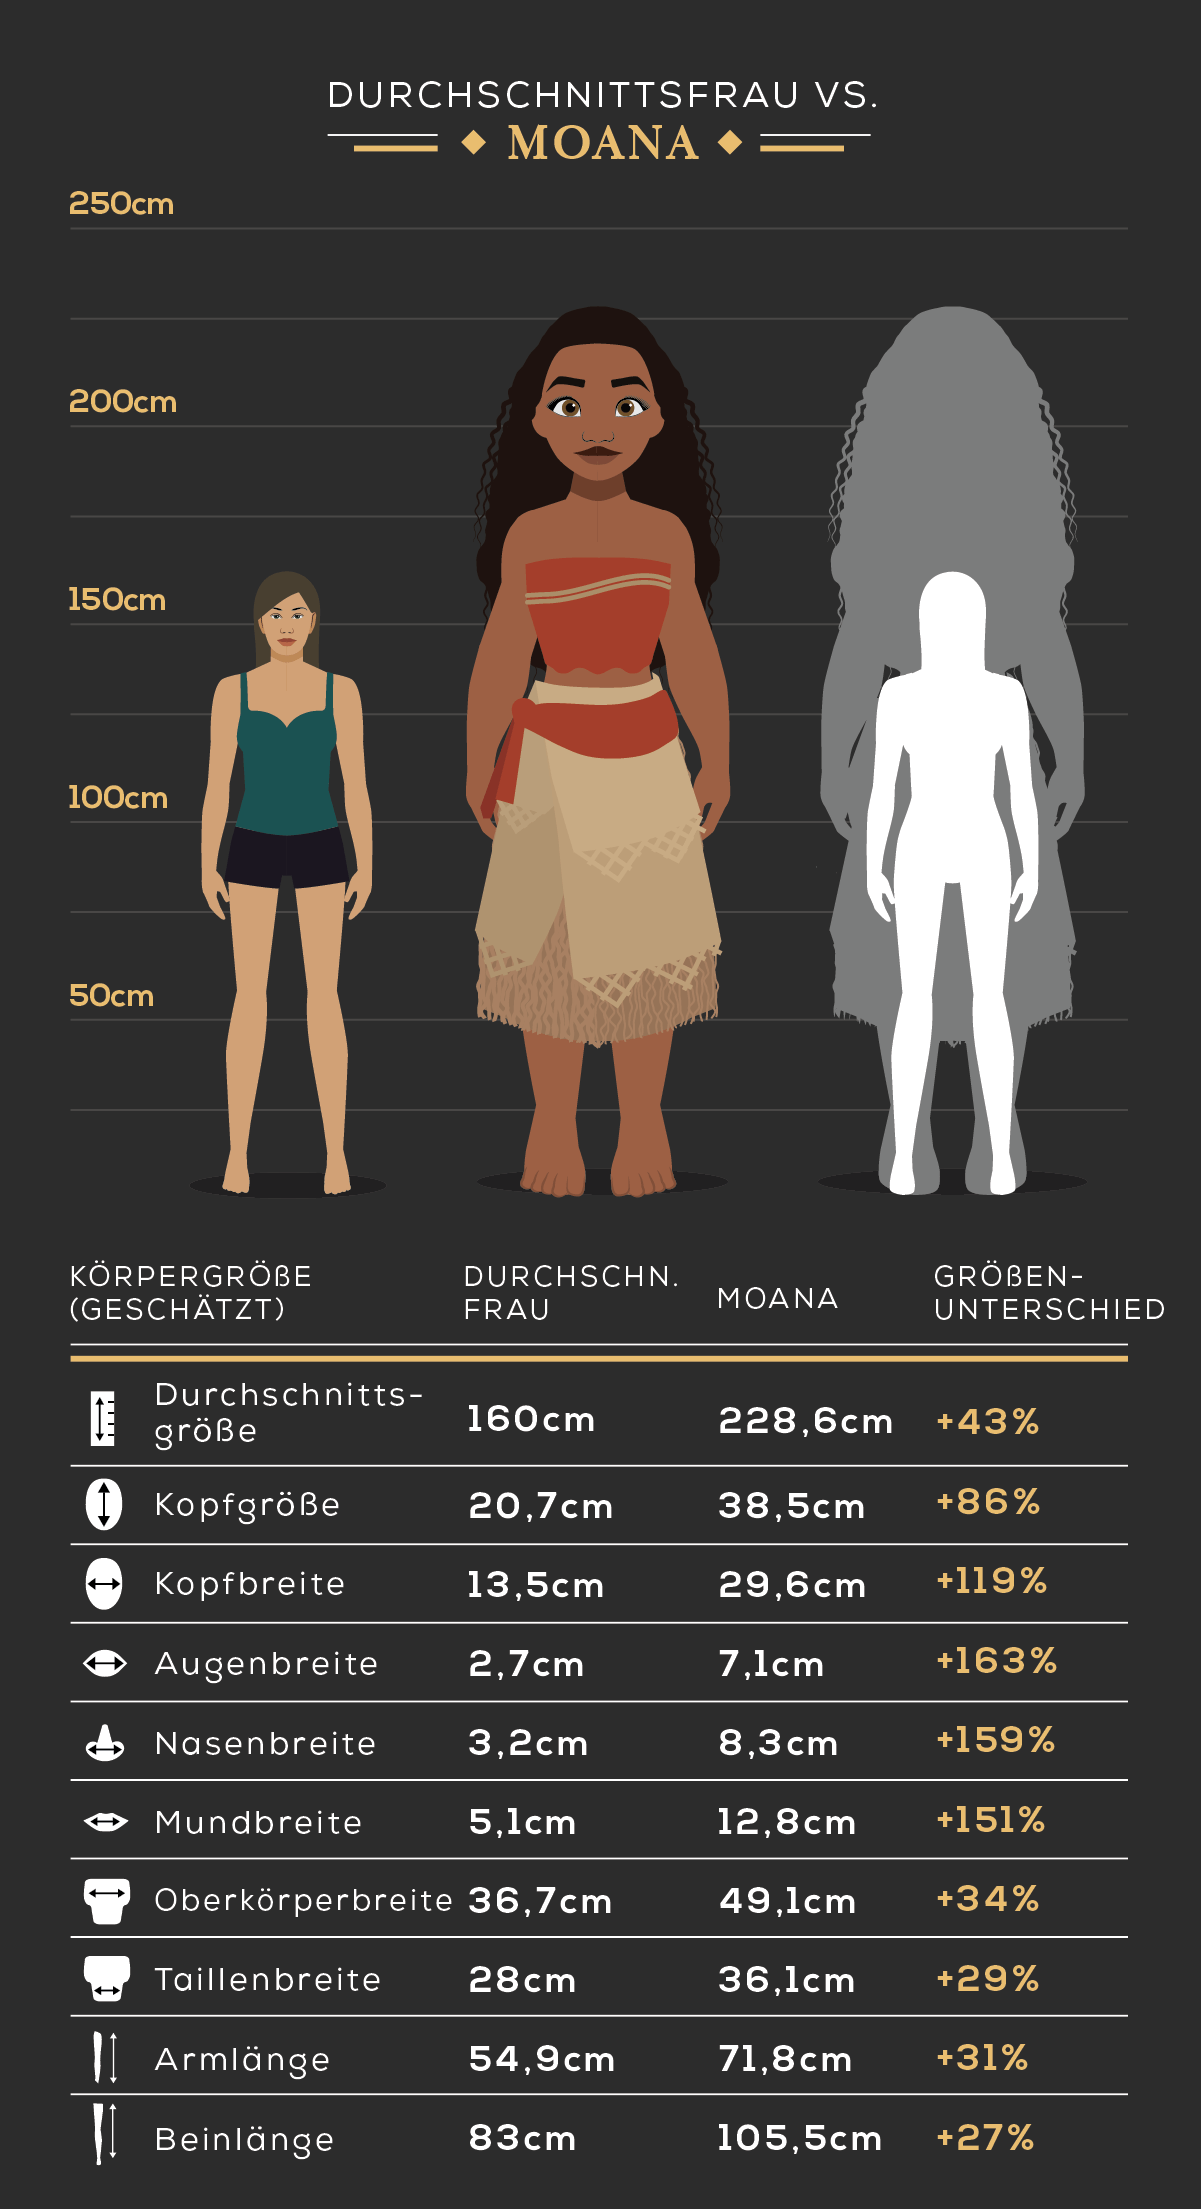 Körpergröße der Durchschnittsfrau vs. Moana